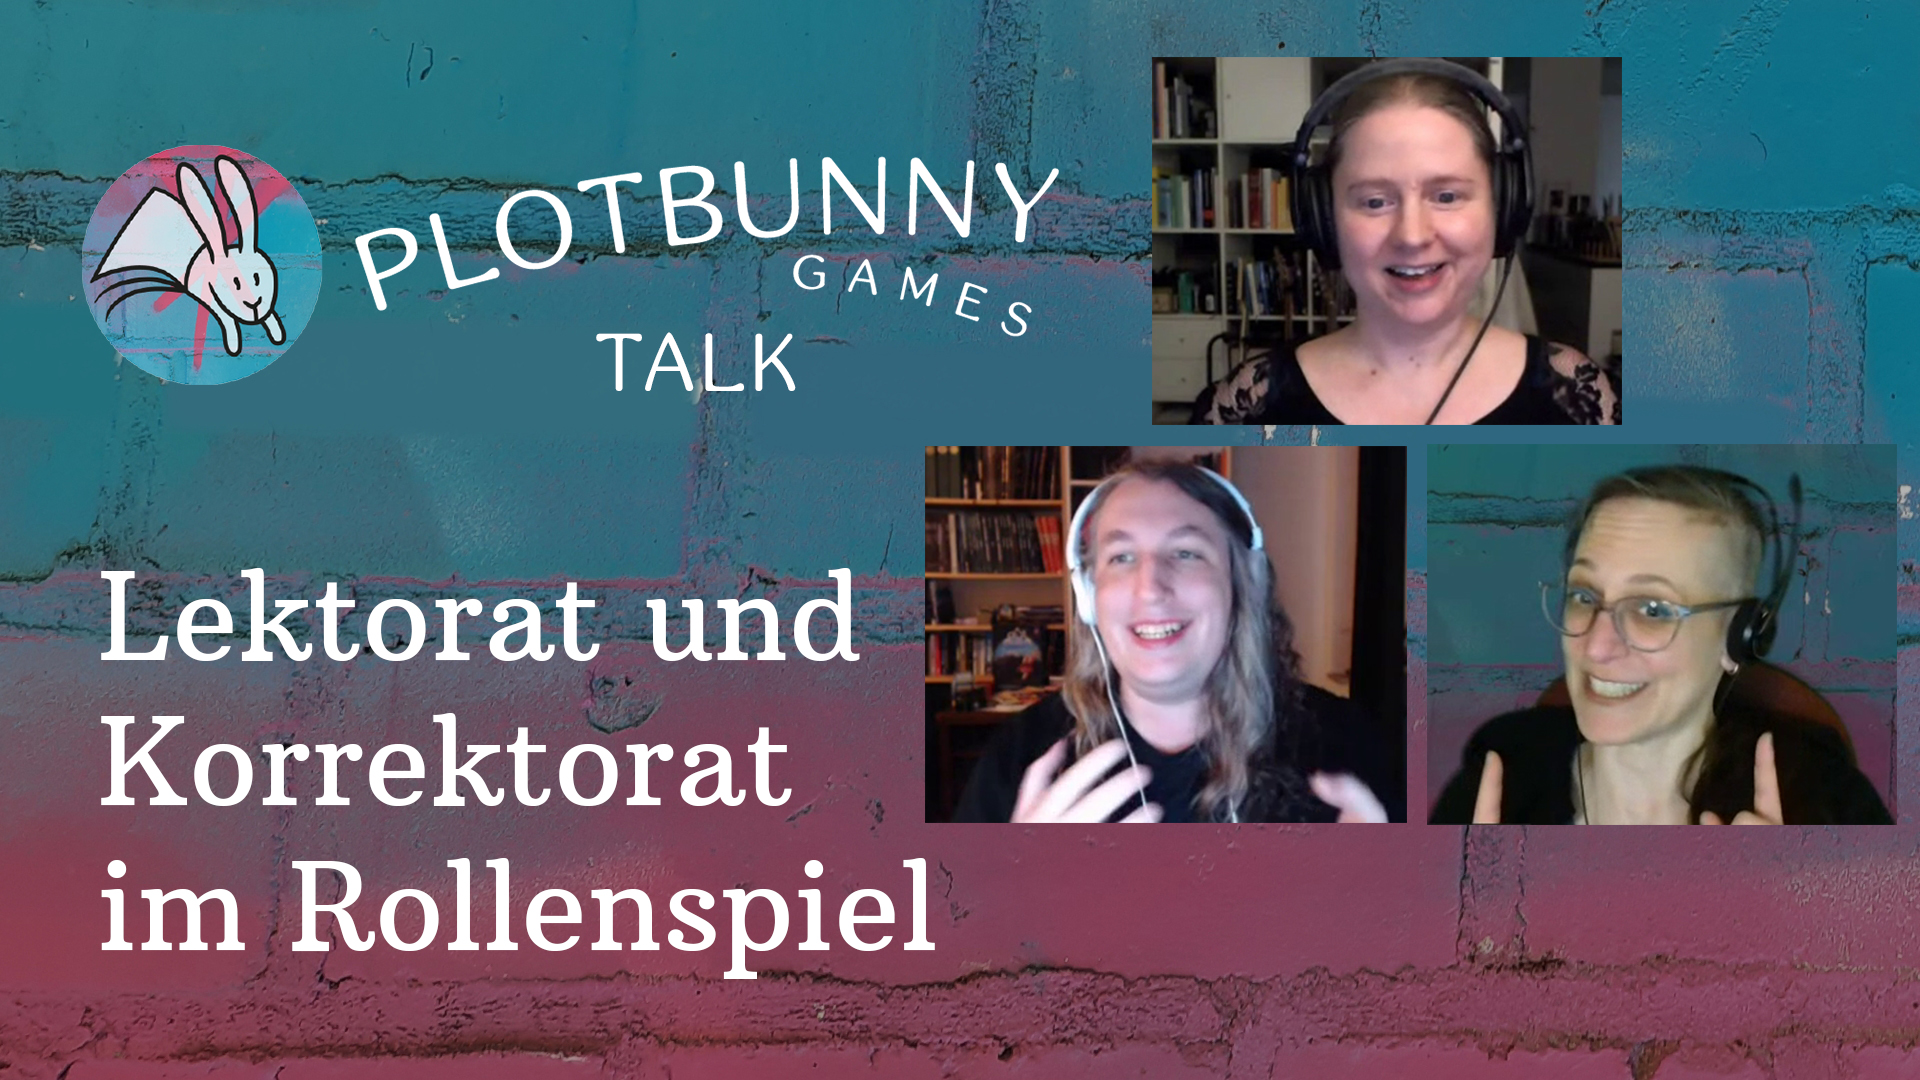 Thumbnail des Videos "Lektorat und Korrektorat im Rollenspiel" mit Screenshot von Camilla, Jasmin und Andrea.